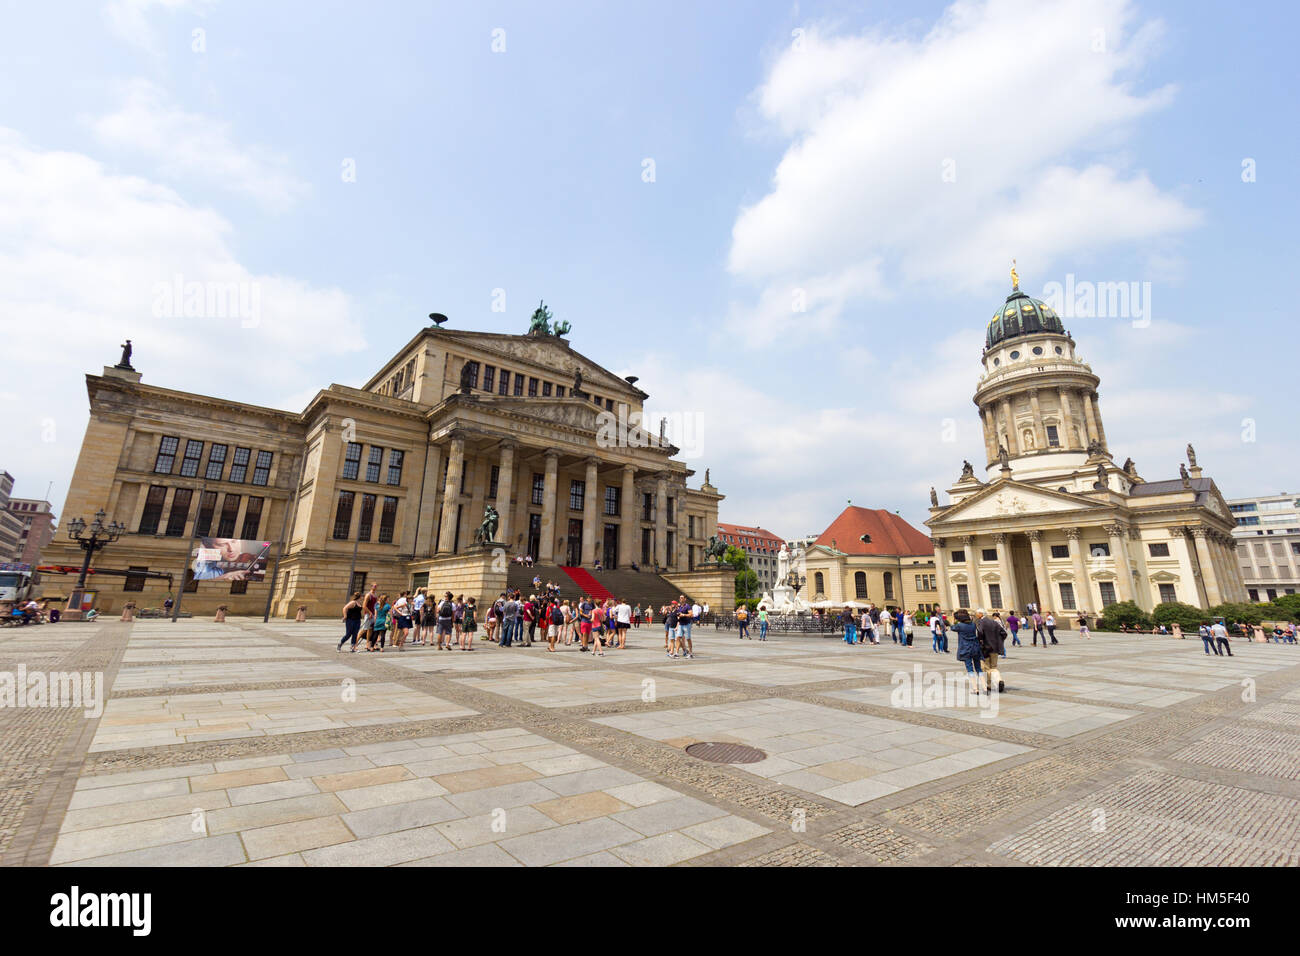 BERLIN, Deutschland - 23 Mai: Deutsche Dom und das Konzerthaus am Gendarmenmarkt am 23. Mai 2014 in Berlin, Deutschland. Erstellen Sie das Quadrat Stockfoto